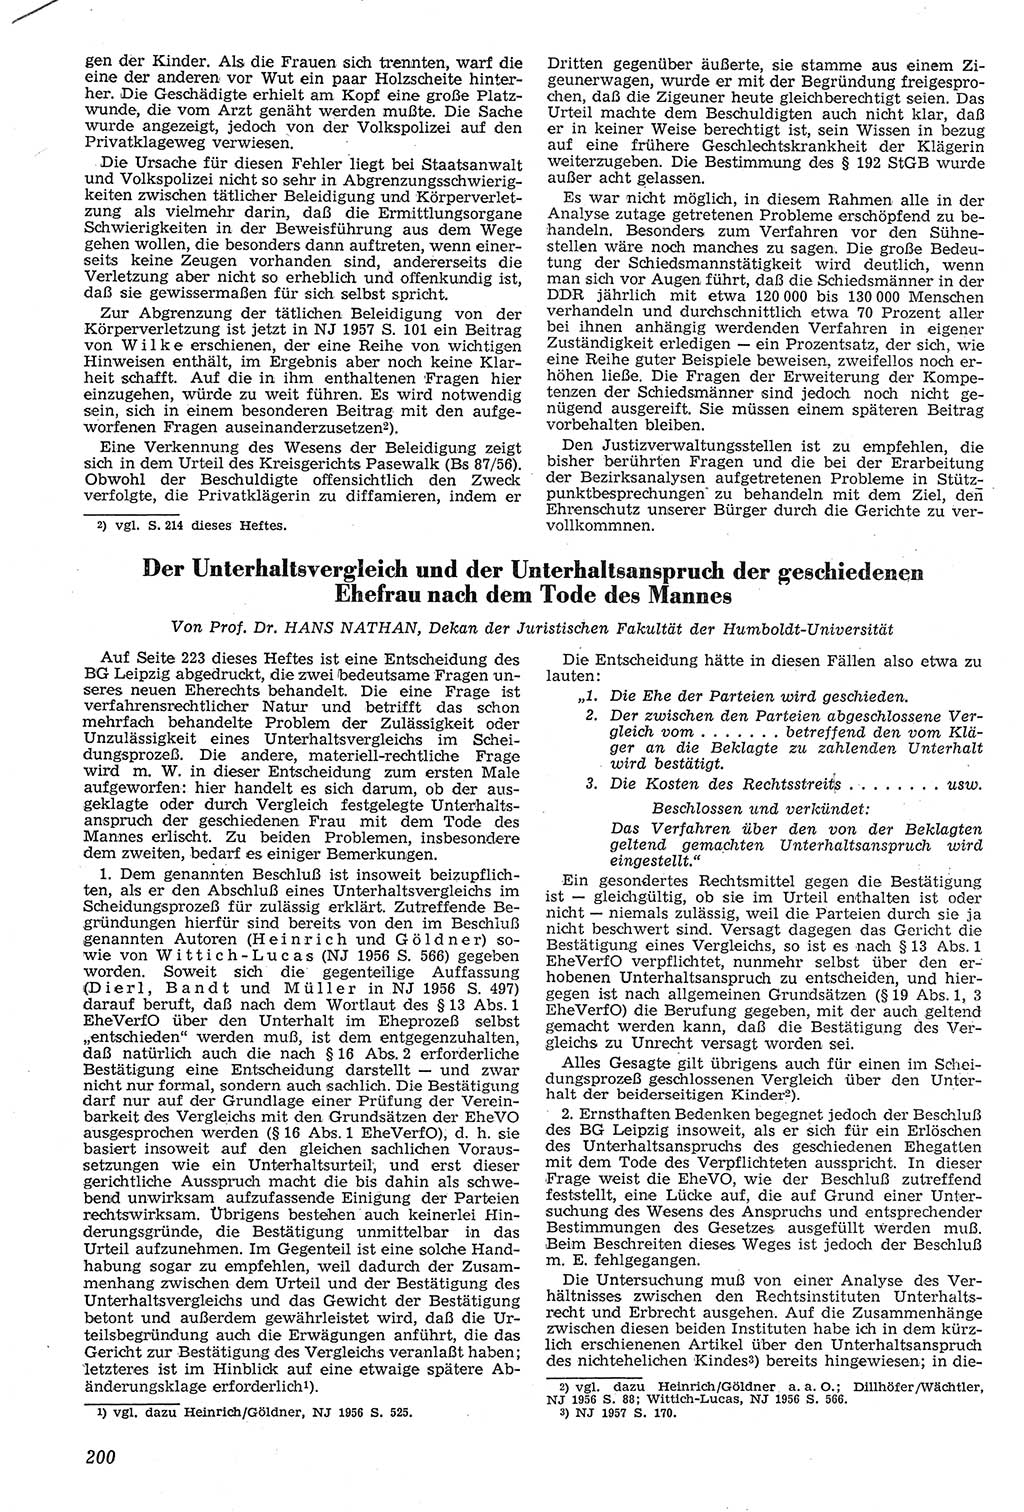 Neue Justiz (NJ), Zeitschrift für Recht und Rechtswissenschaft [Deutsche Demokratische Republik (DDR)], 11. Jahrgang 1957, Seite 200 (NJ DDR 1957, S. 200)